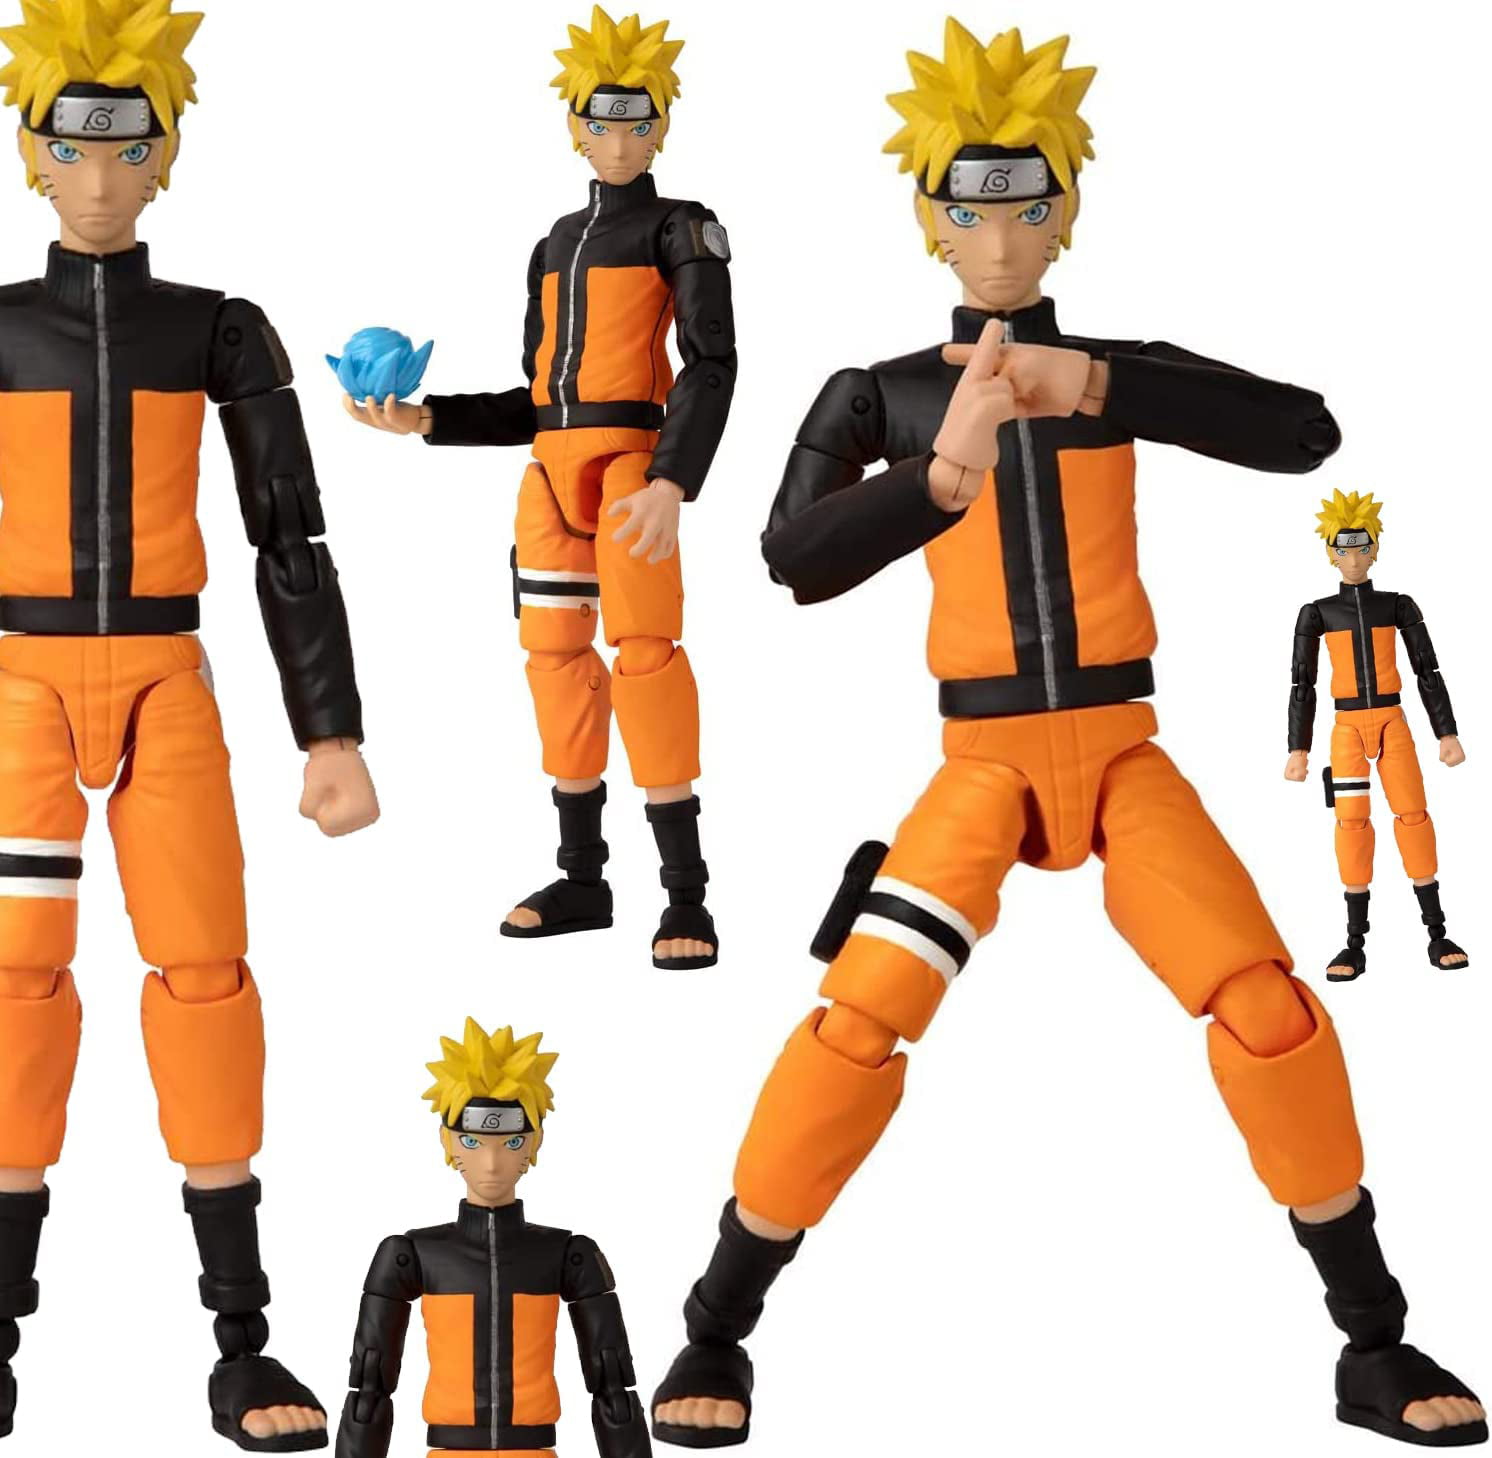 Mega Combo Naruto Action Figure + Polaroide Anime Bonecos Novo